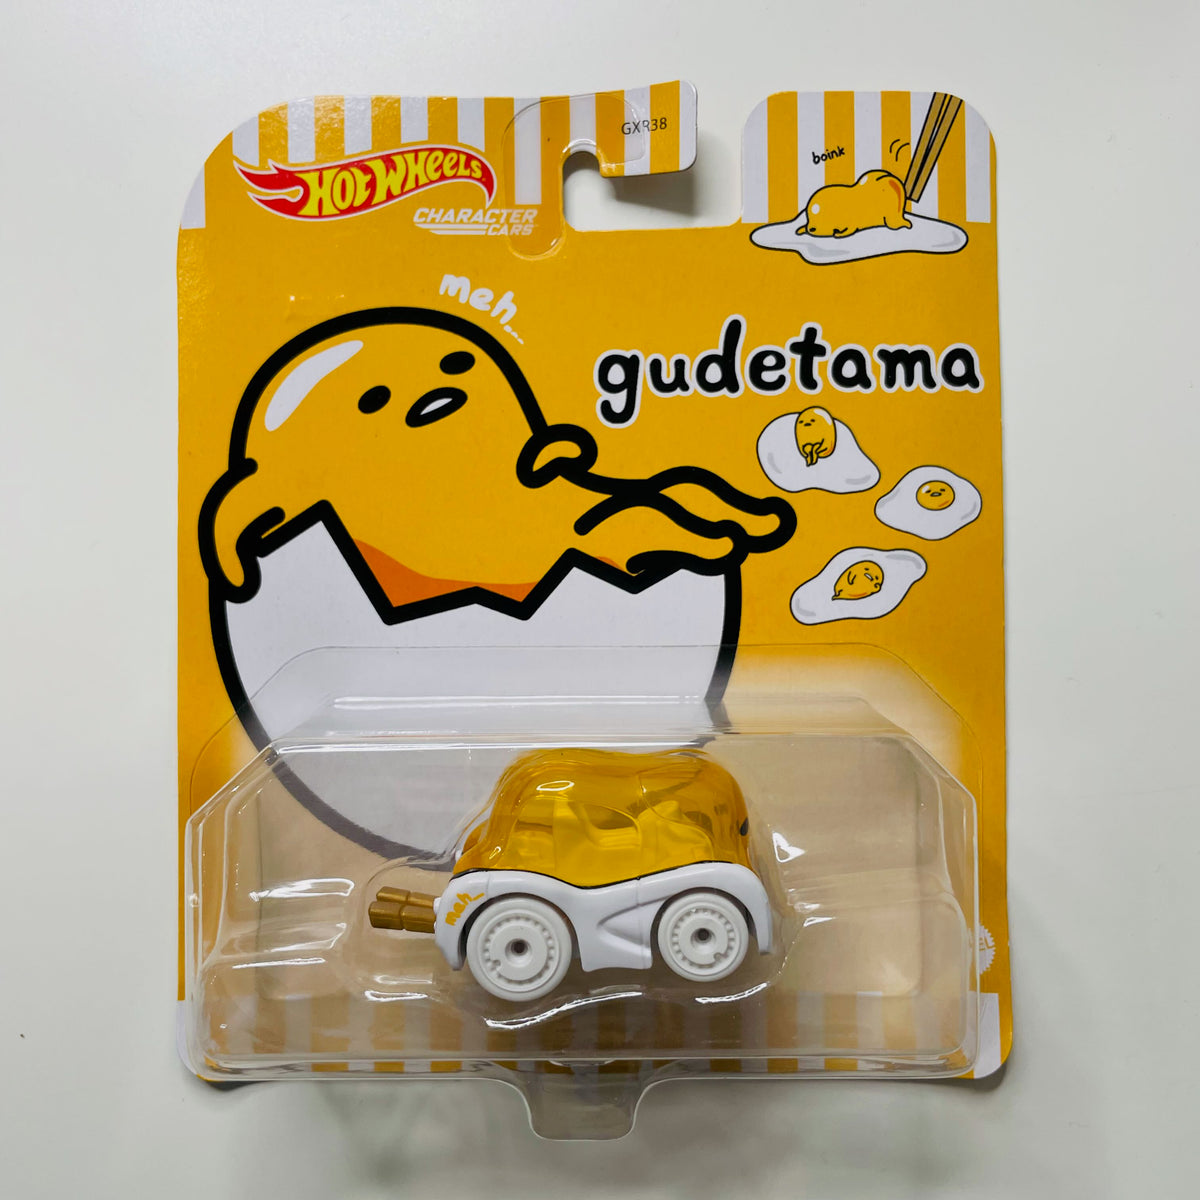 2021 Hot Wheels Character Cars: Gudetama Lazy Egg, Hello Kitty